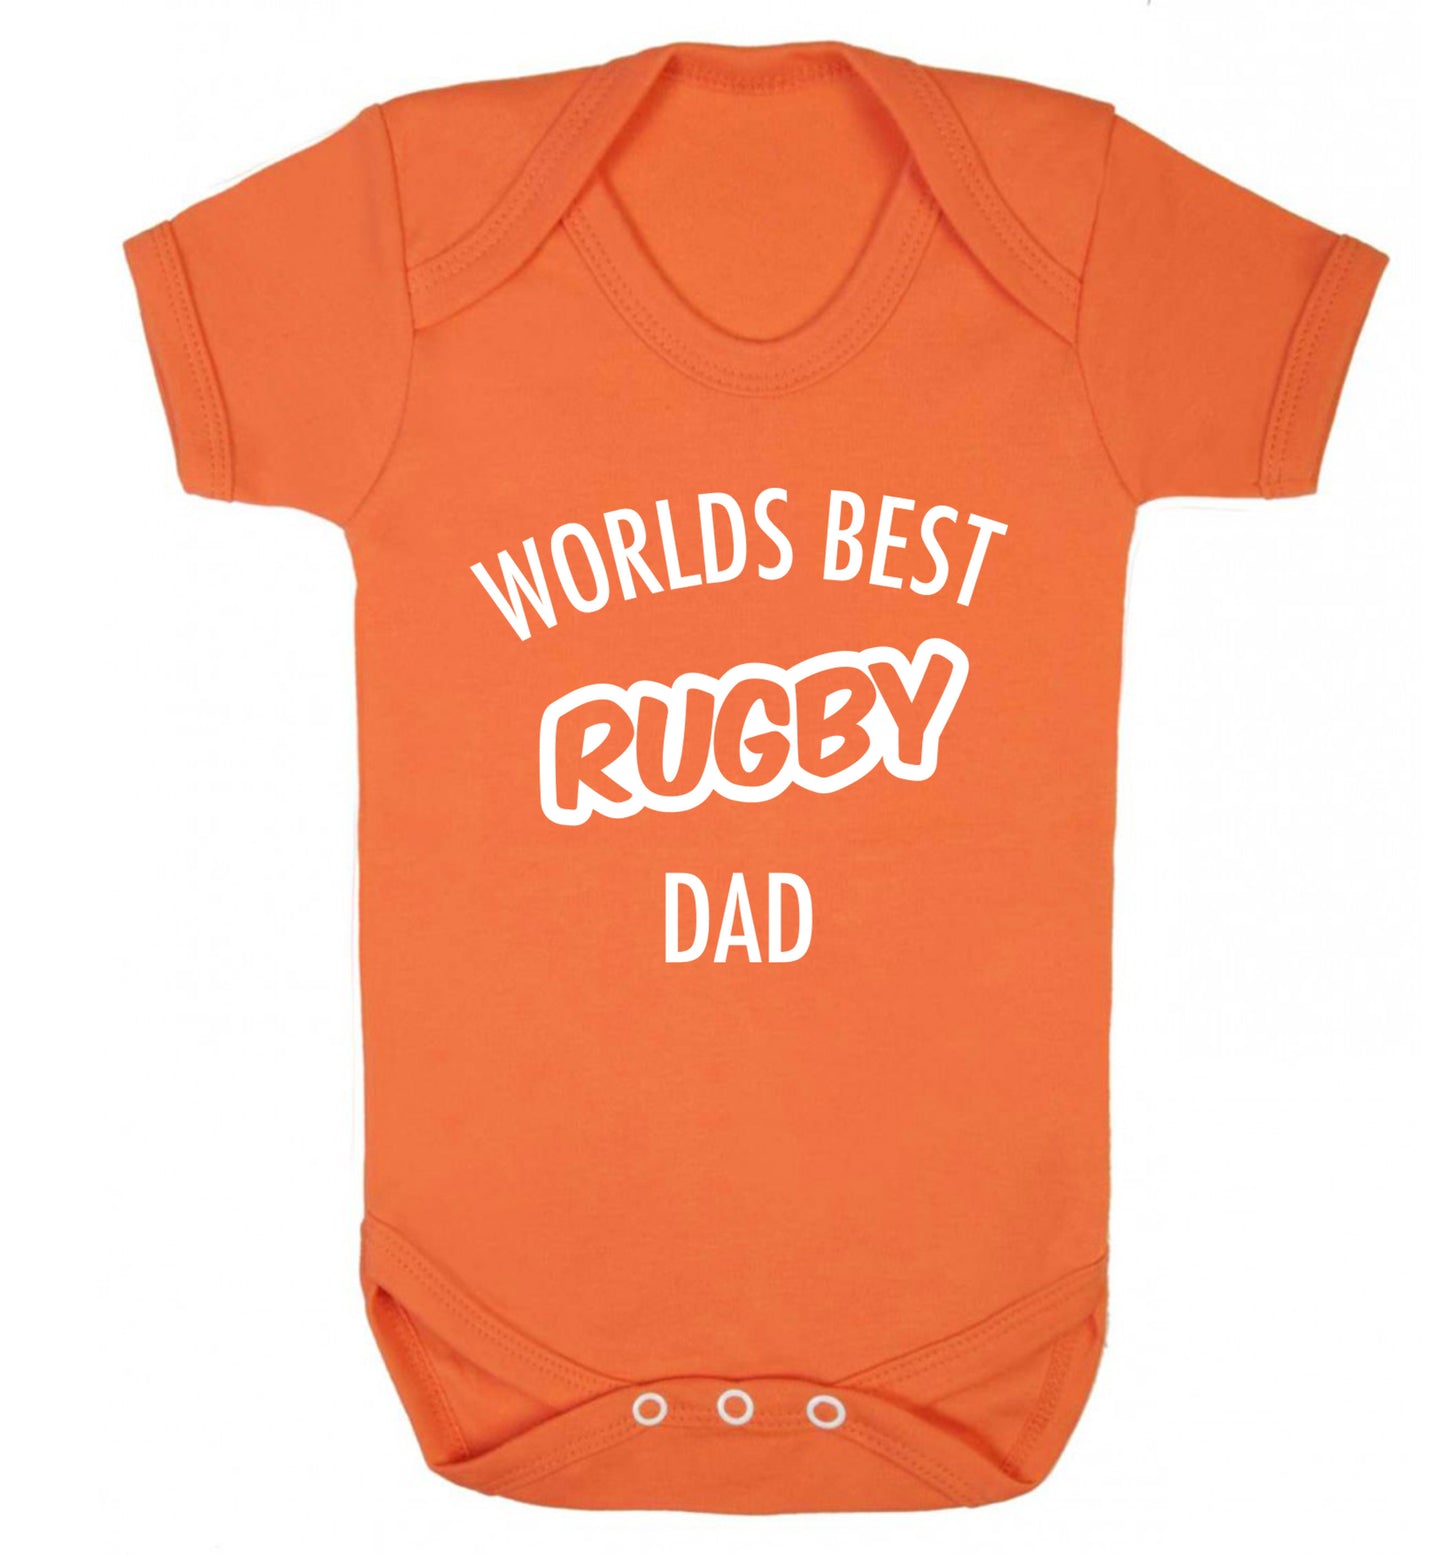 Worlds best rugby dad Baby Vest orange 18-24 months